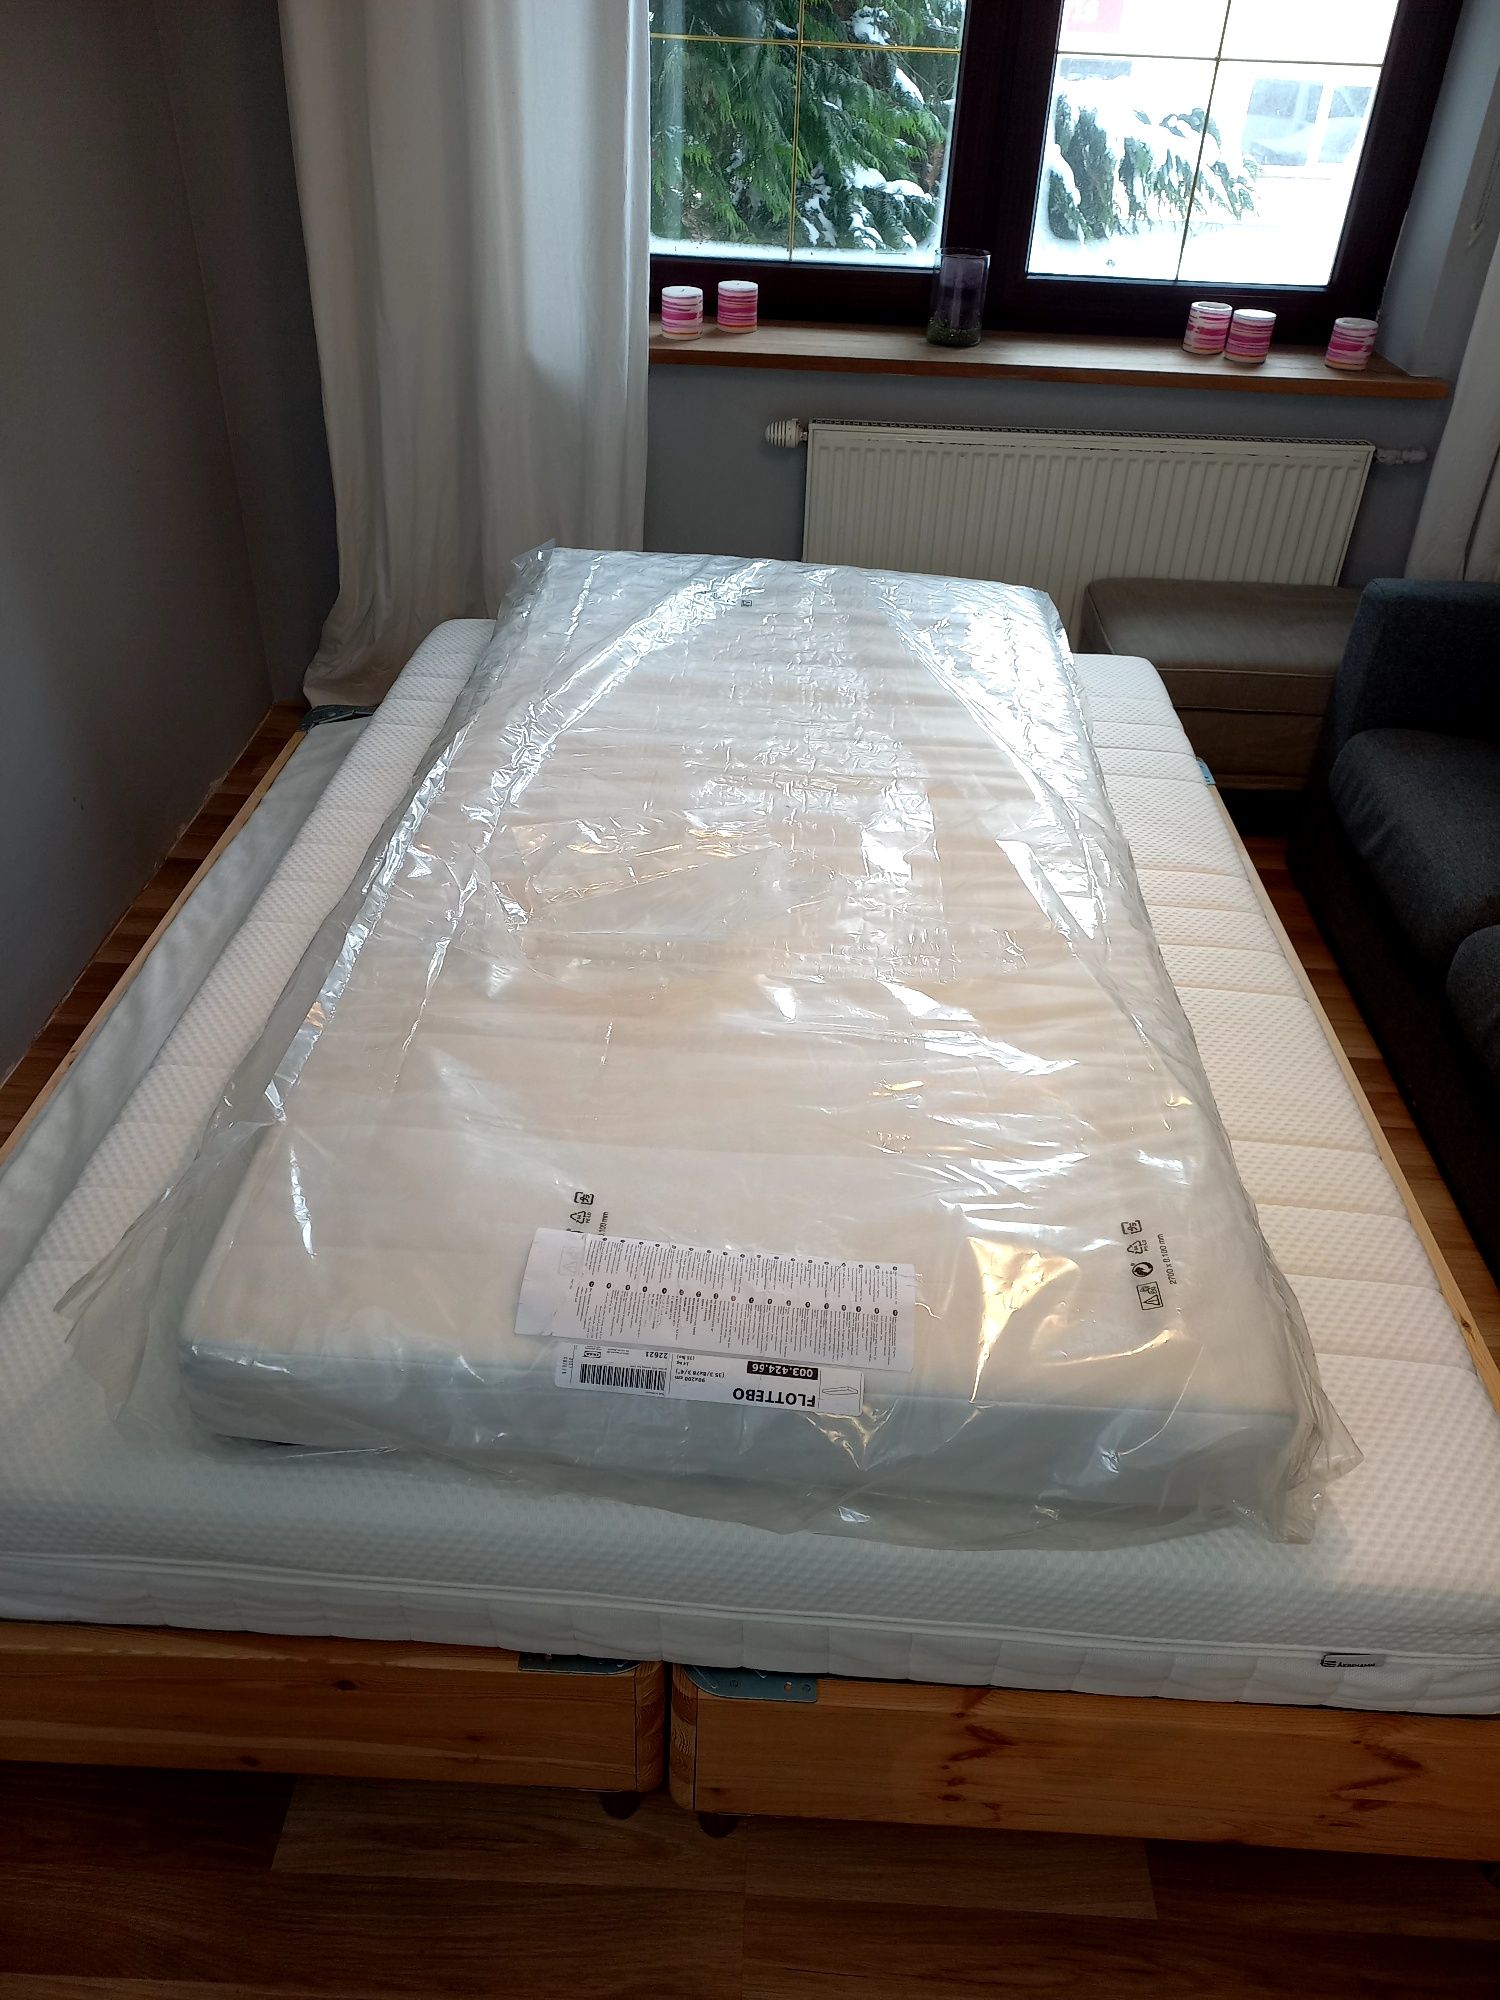 Nowy Materac sprężynowy FLOTTEBO z IKEA 1/2 ceny, 90x200 cm kilka szt.